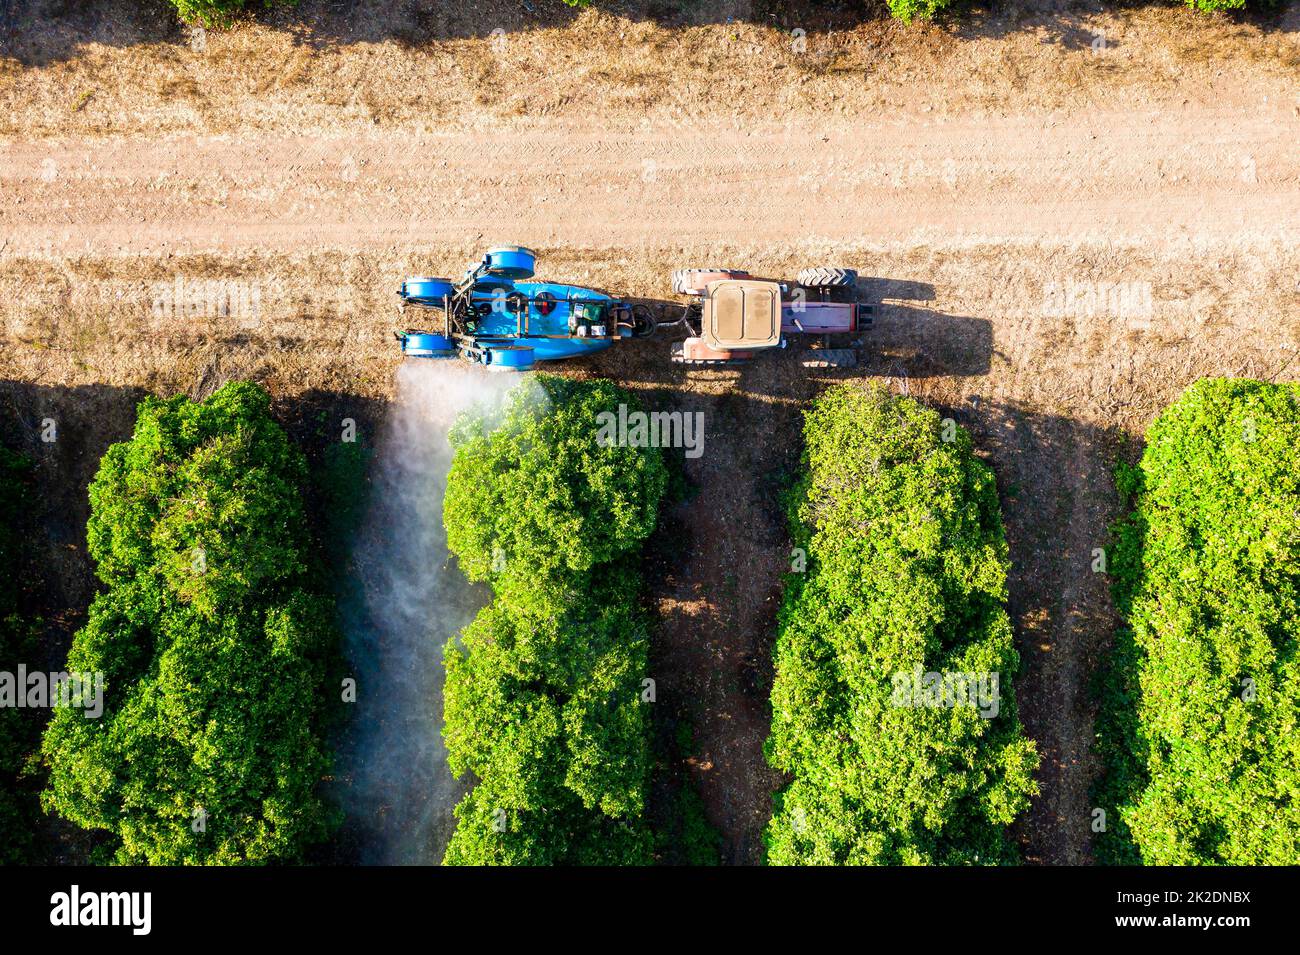 Traktor sprüht Insektizid oder Fungizid auf Orangenbäume. Ansicht von oben Stockfoto